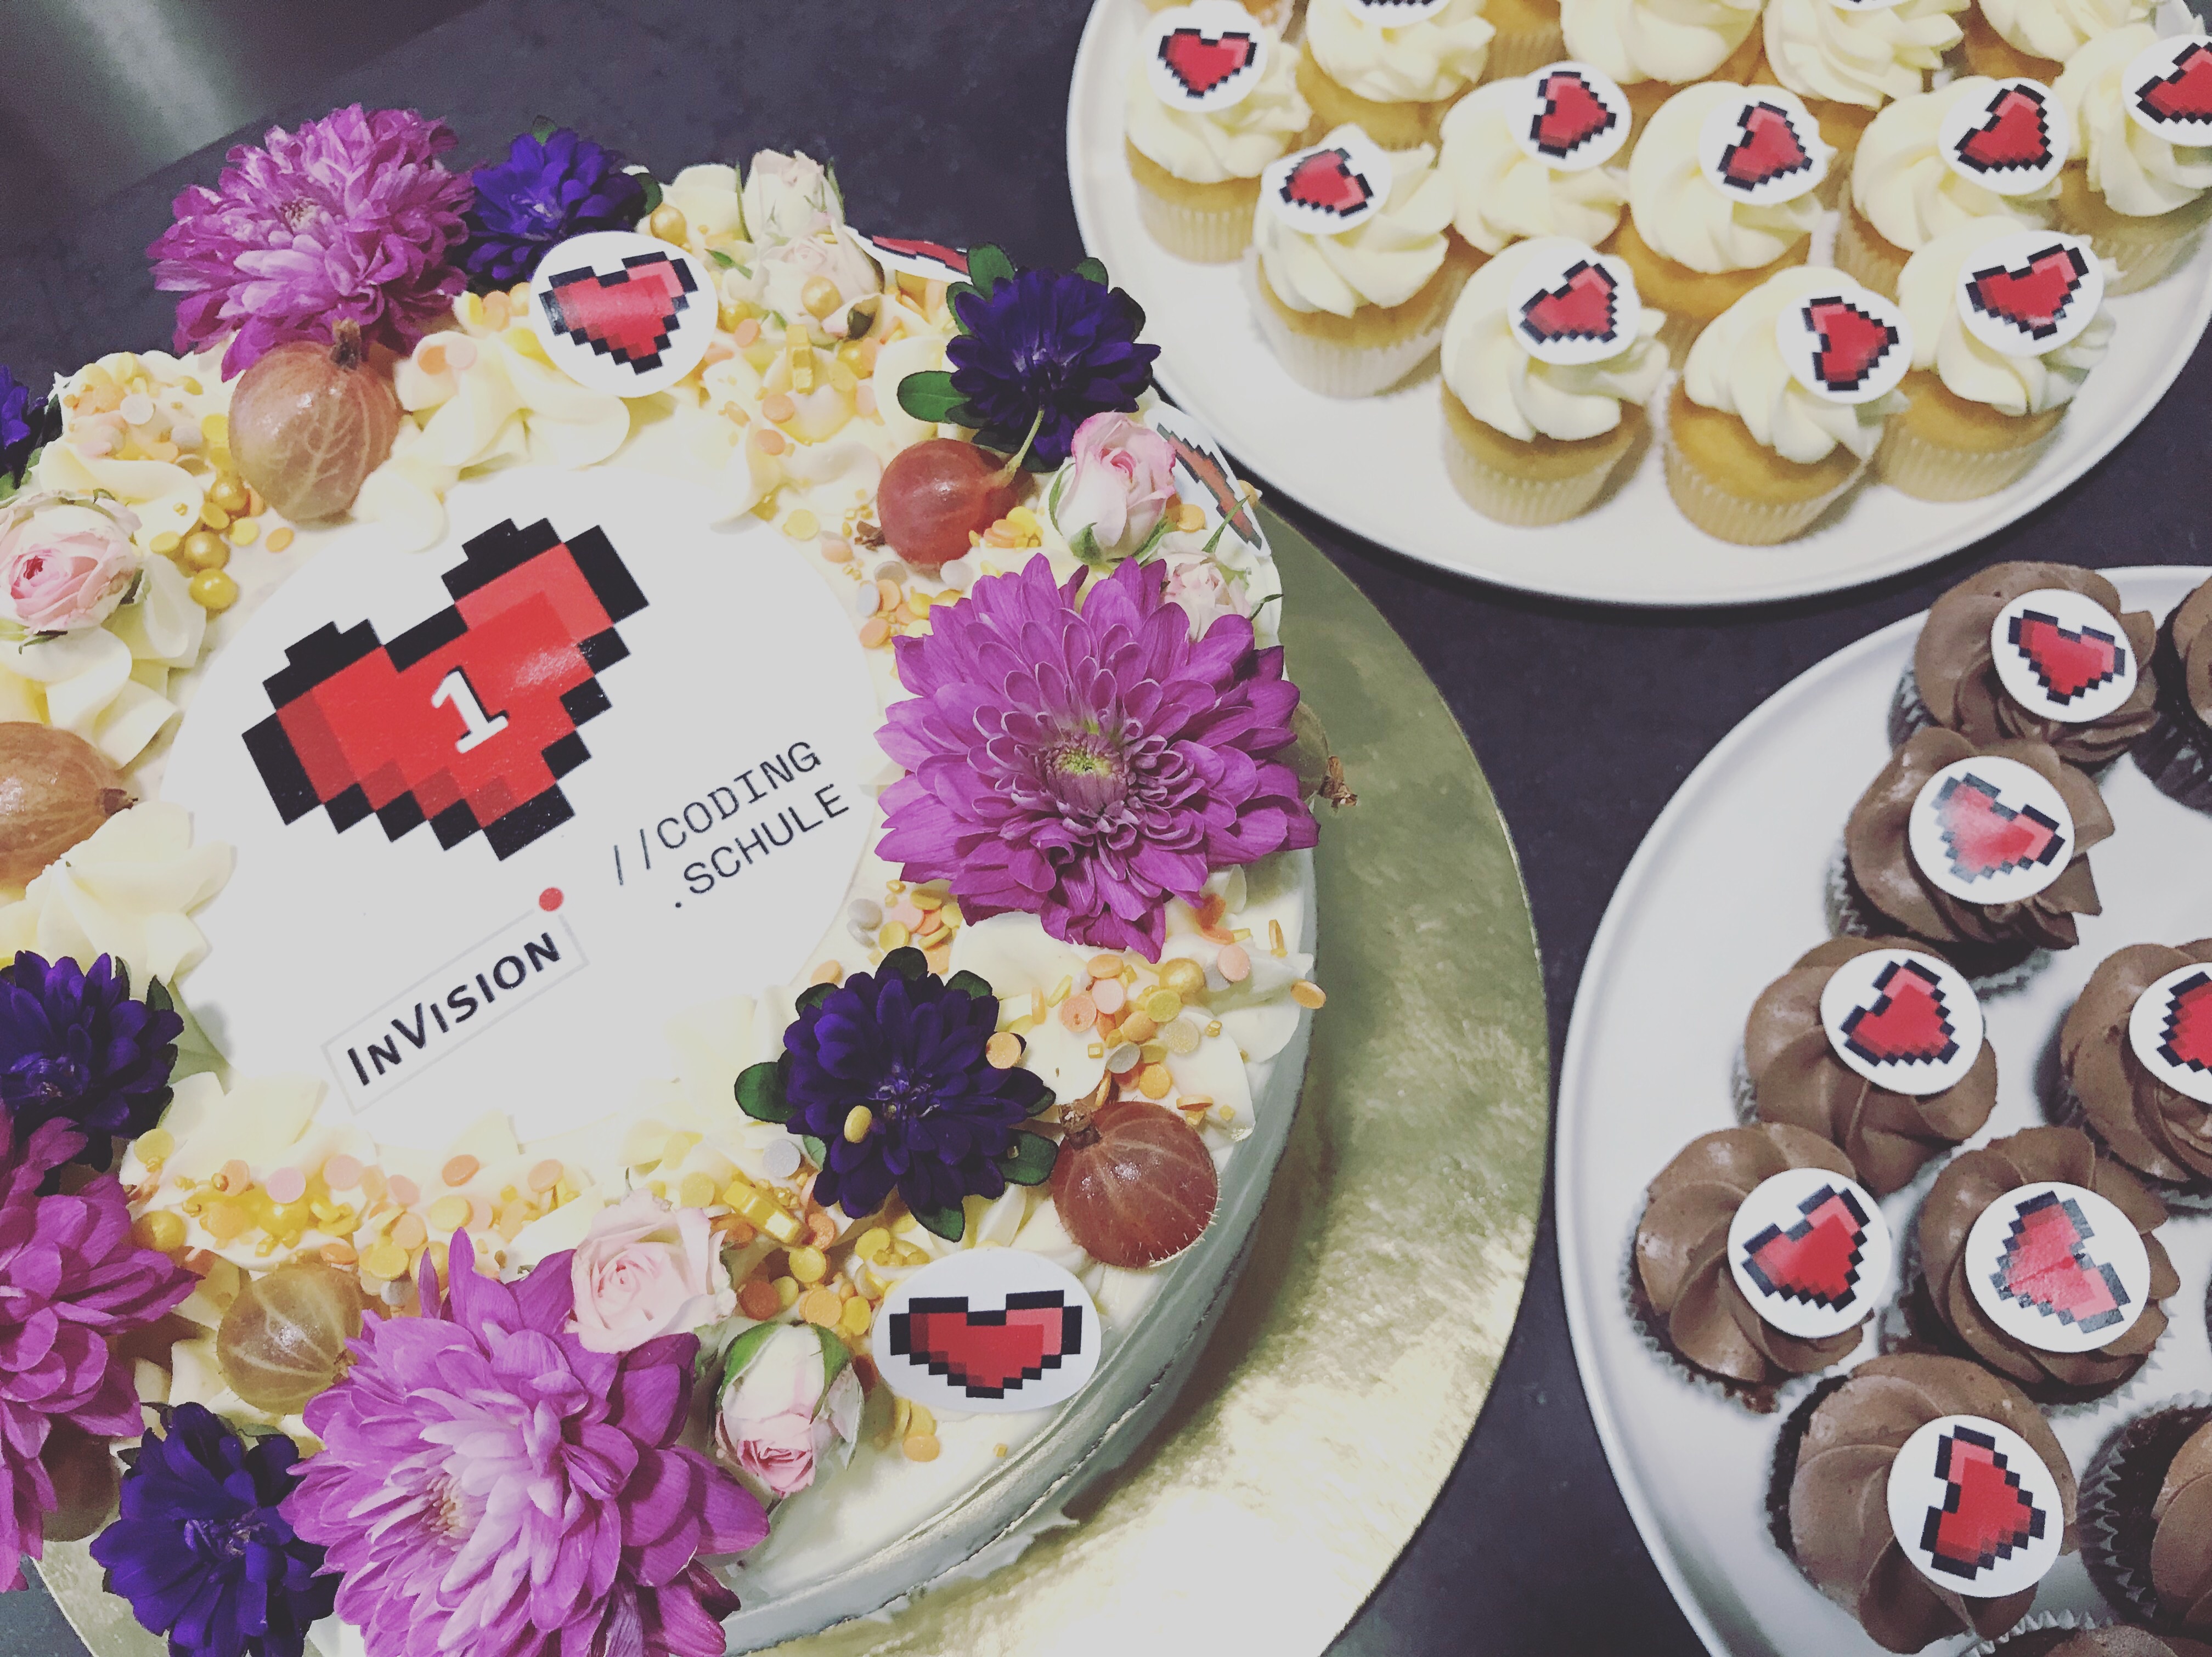 Eine Torte mit Deko und Blumen zum einjährigen Jubiläum der Codingwerkstatt @InVision.